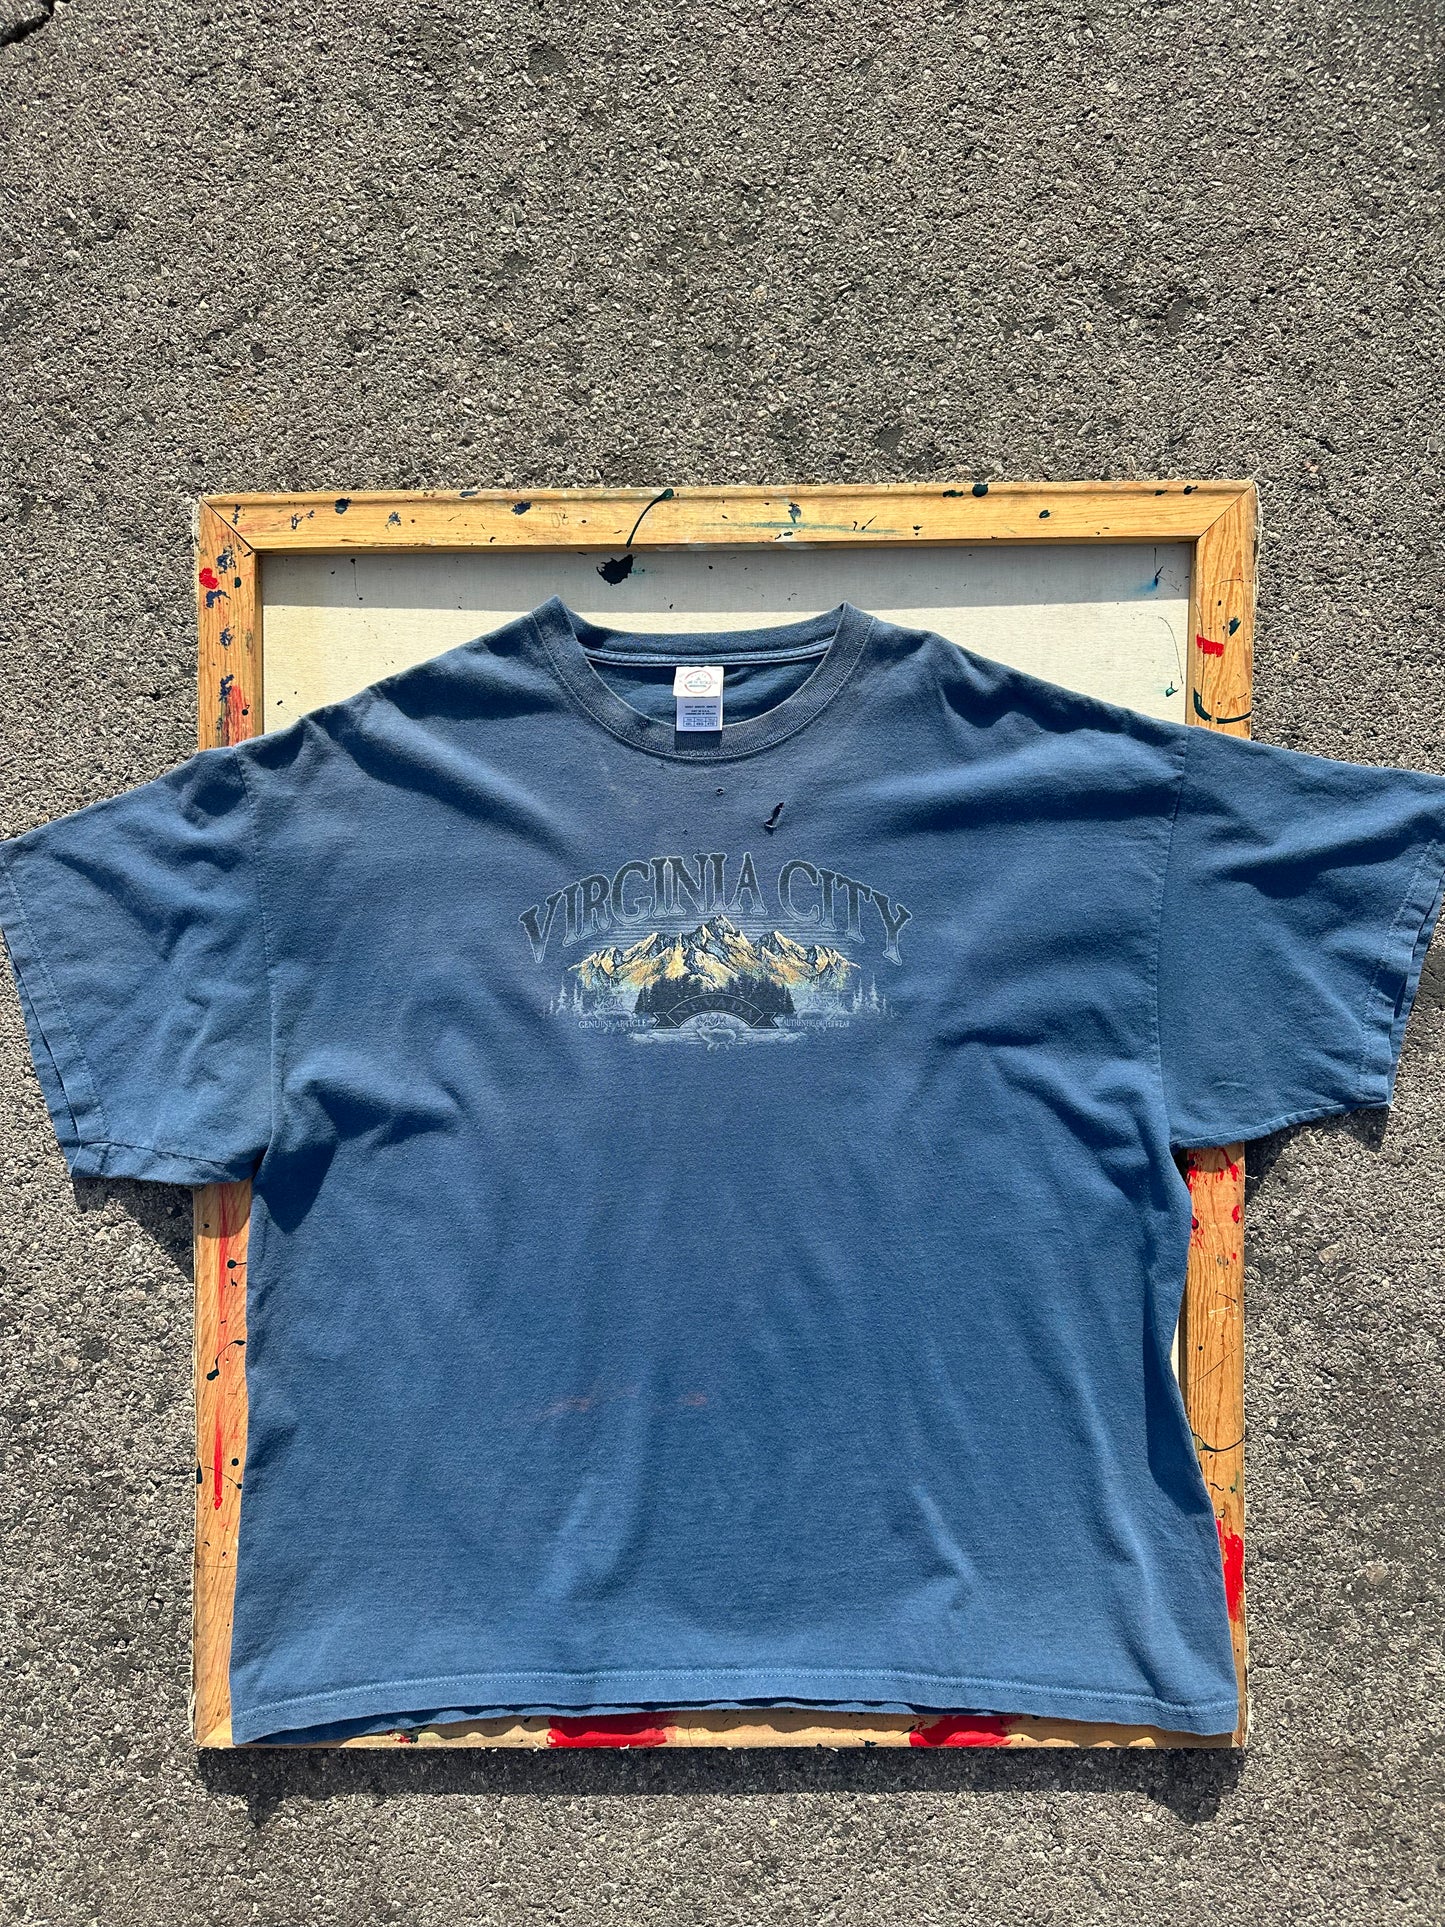 Faded Virginia City Nevada T-Shirt